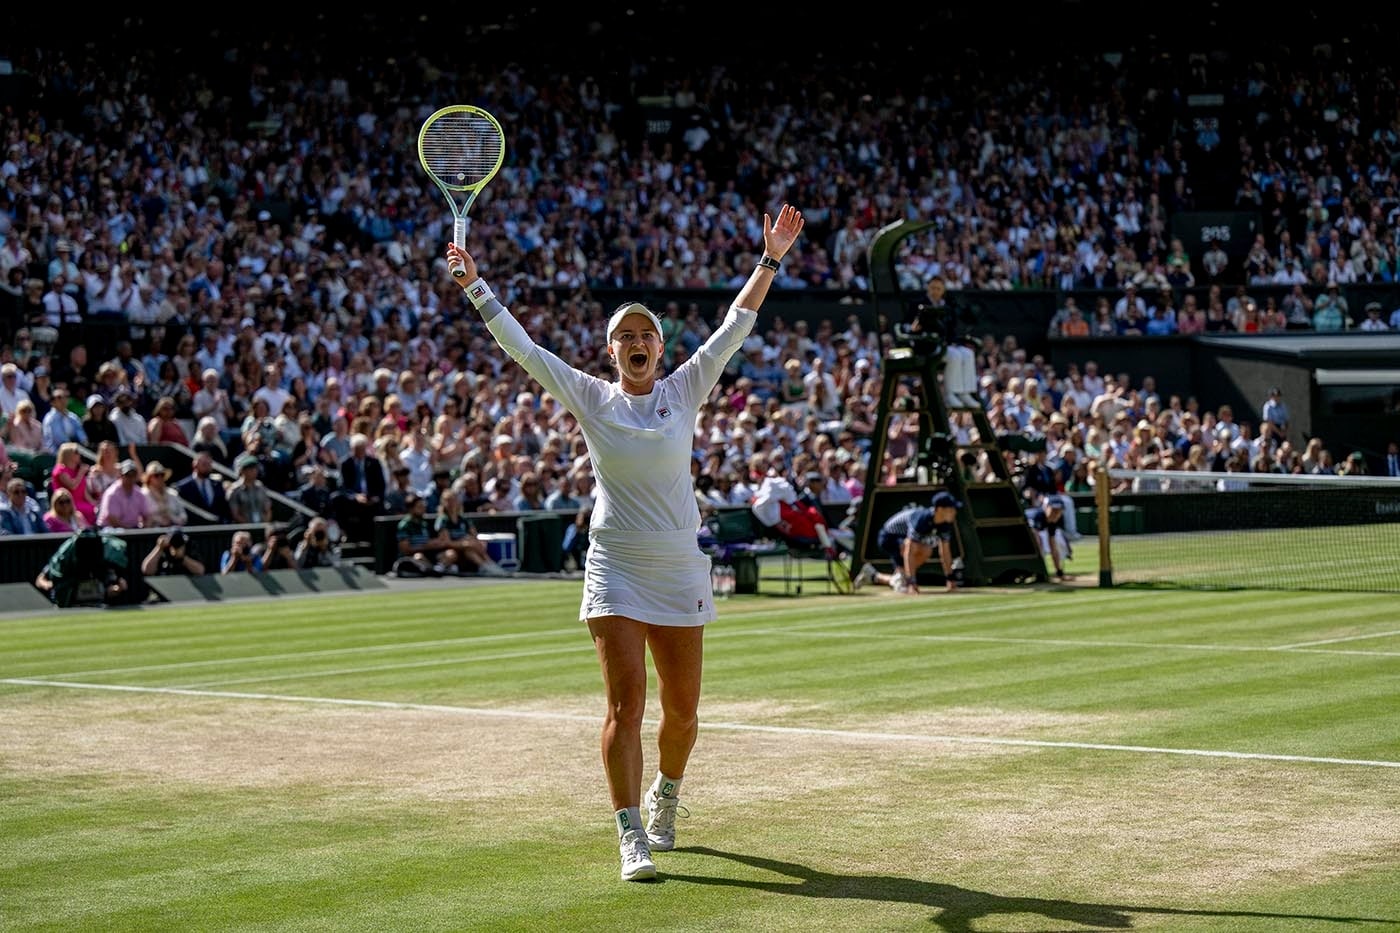 Kép forrása: Wimbledon hivatalos oldala